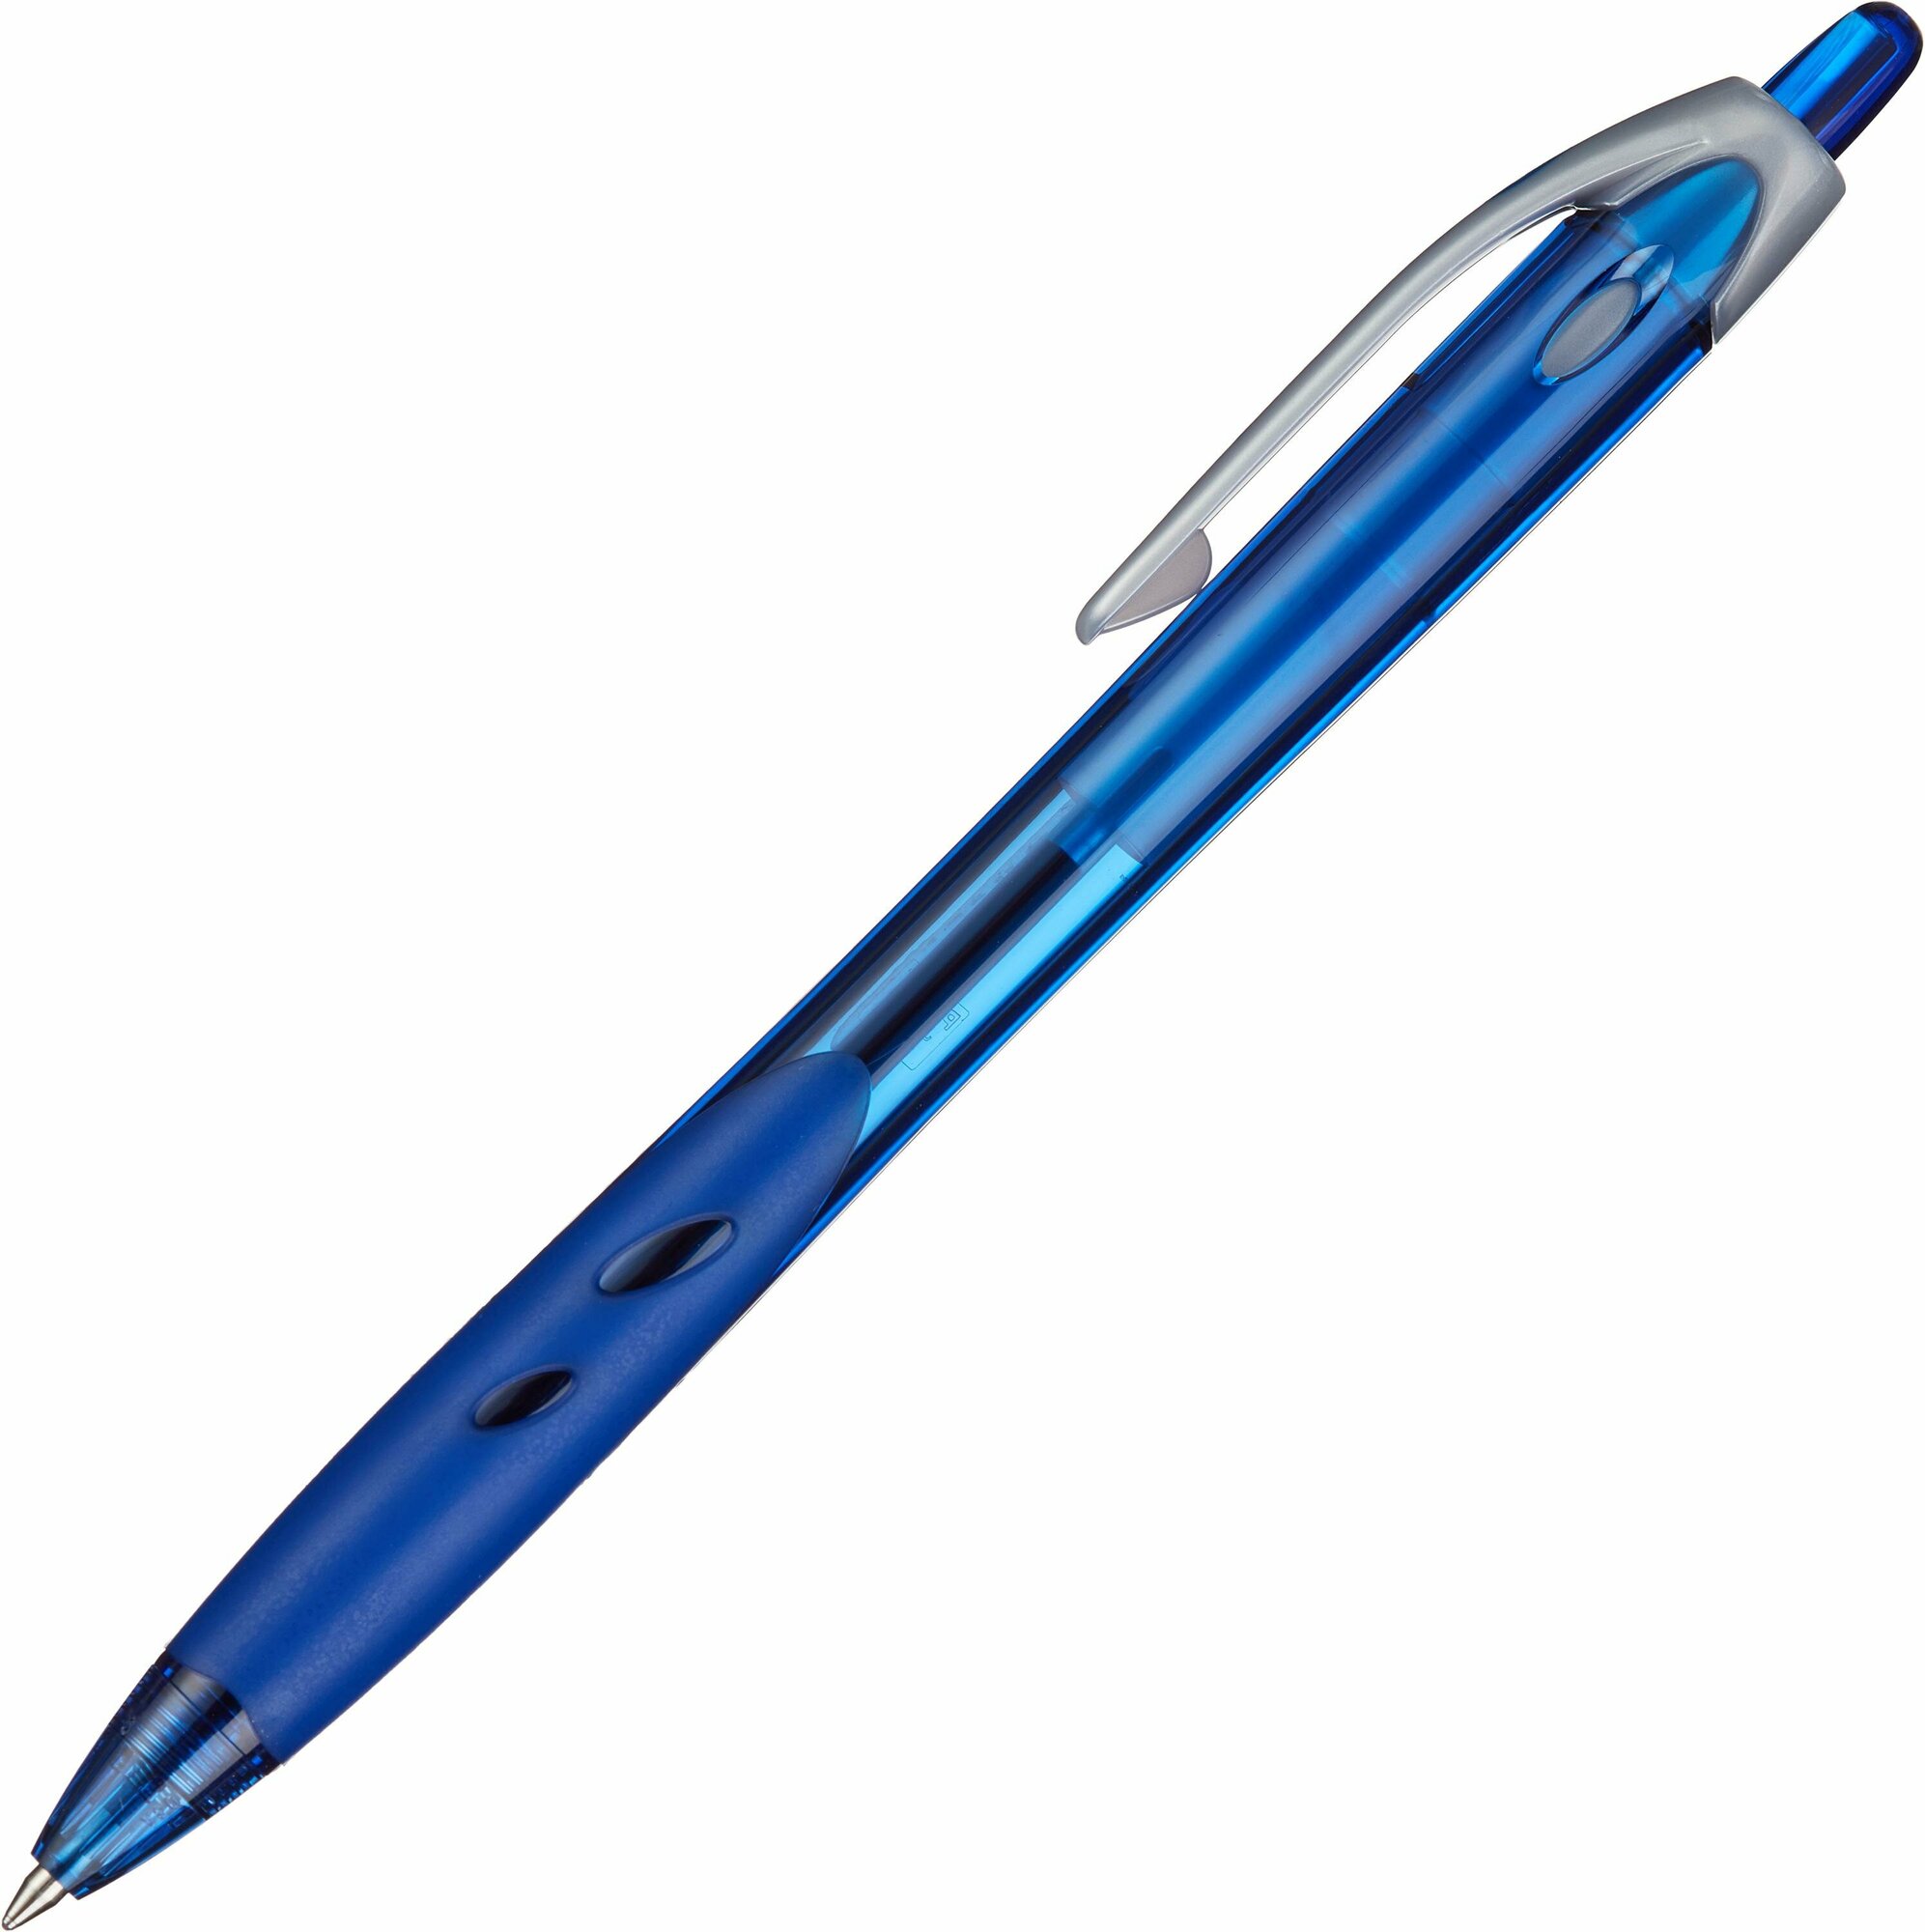 Ручка шариковая Pilot BPRG-10R-F-L Rex Grip, на масляной основе, автомат, цветной корпус, 0,7мм, синяя